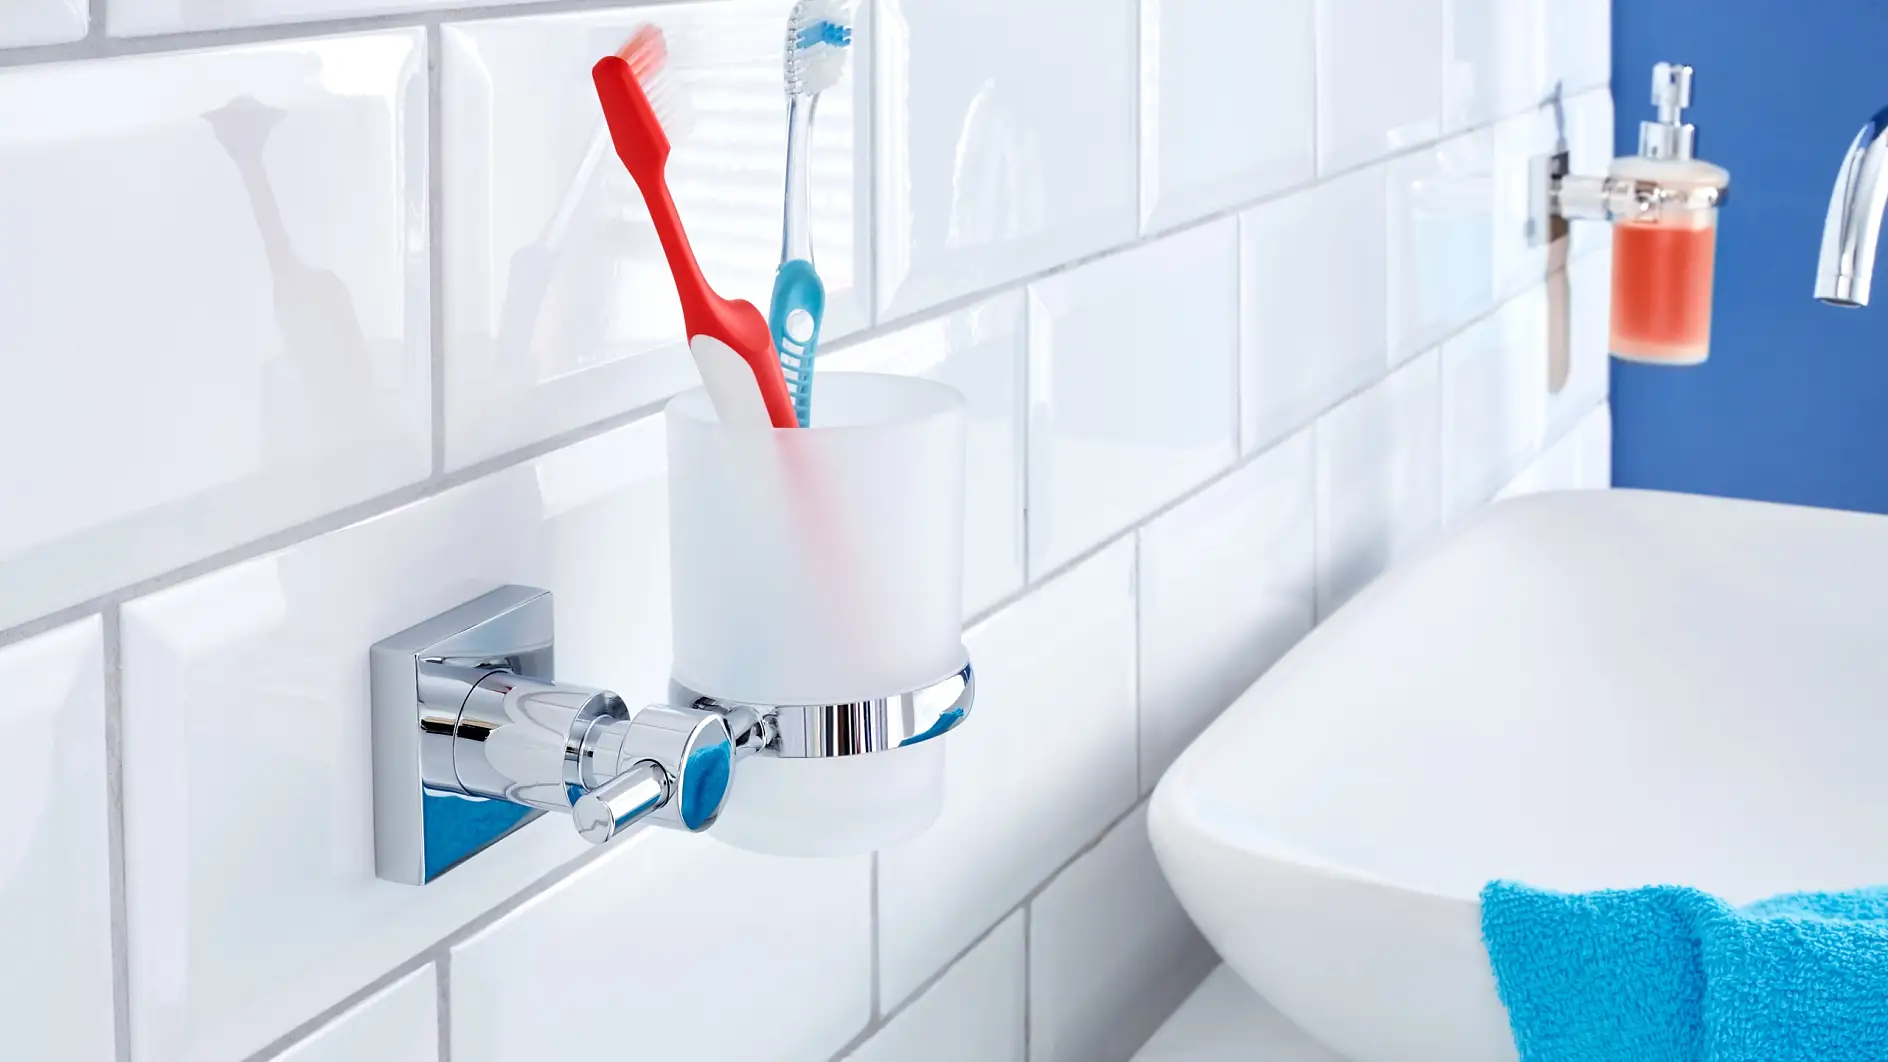 Låt inte ditt tandborstglas ta upp plats på handfatet. Förvara det där det ska vara och ser bäst ut.